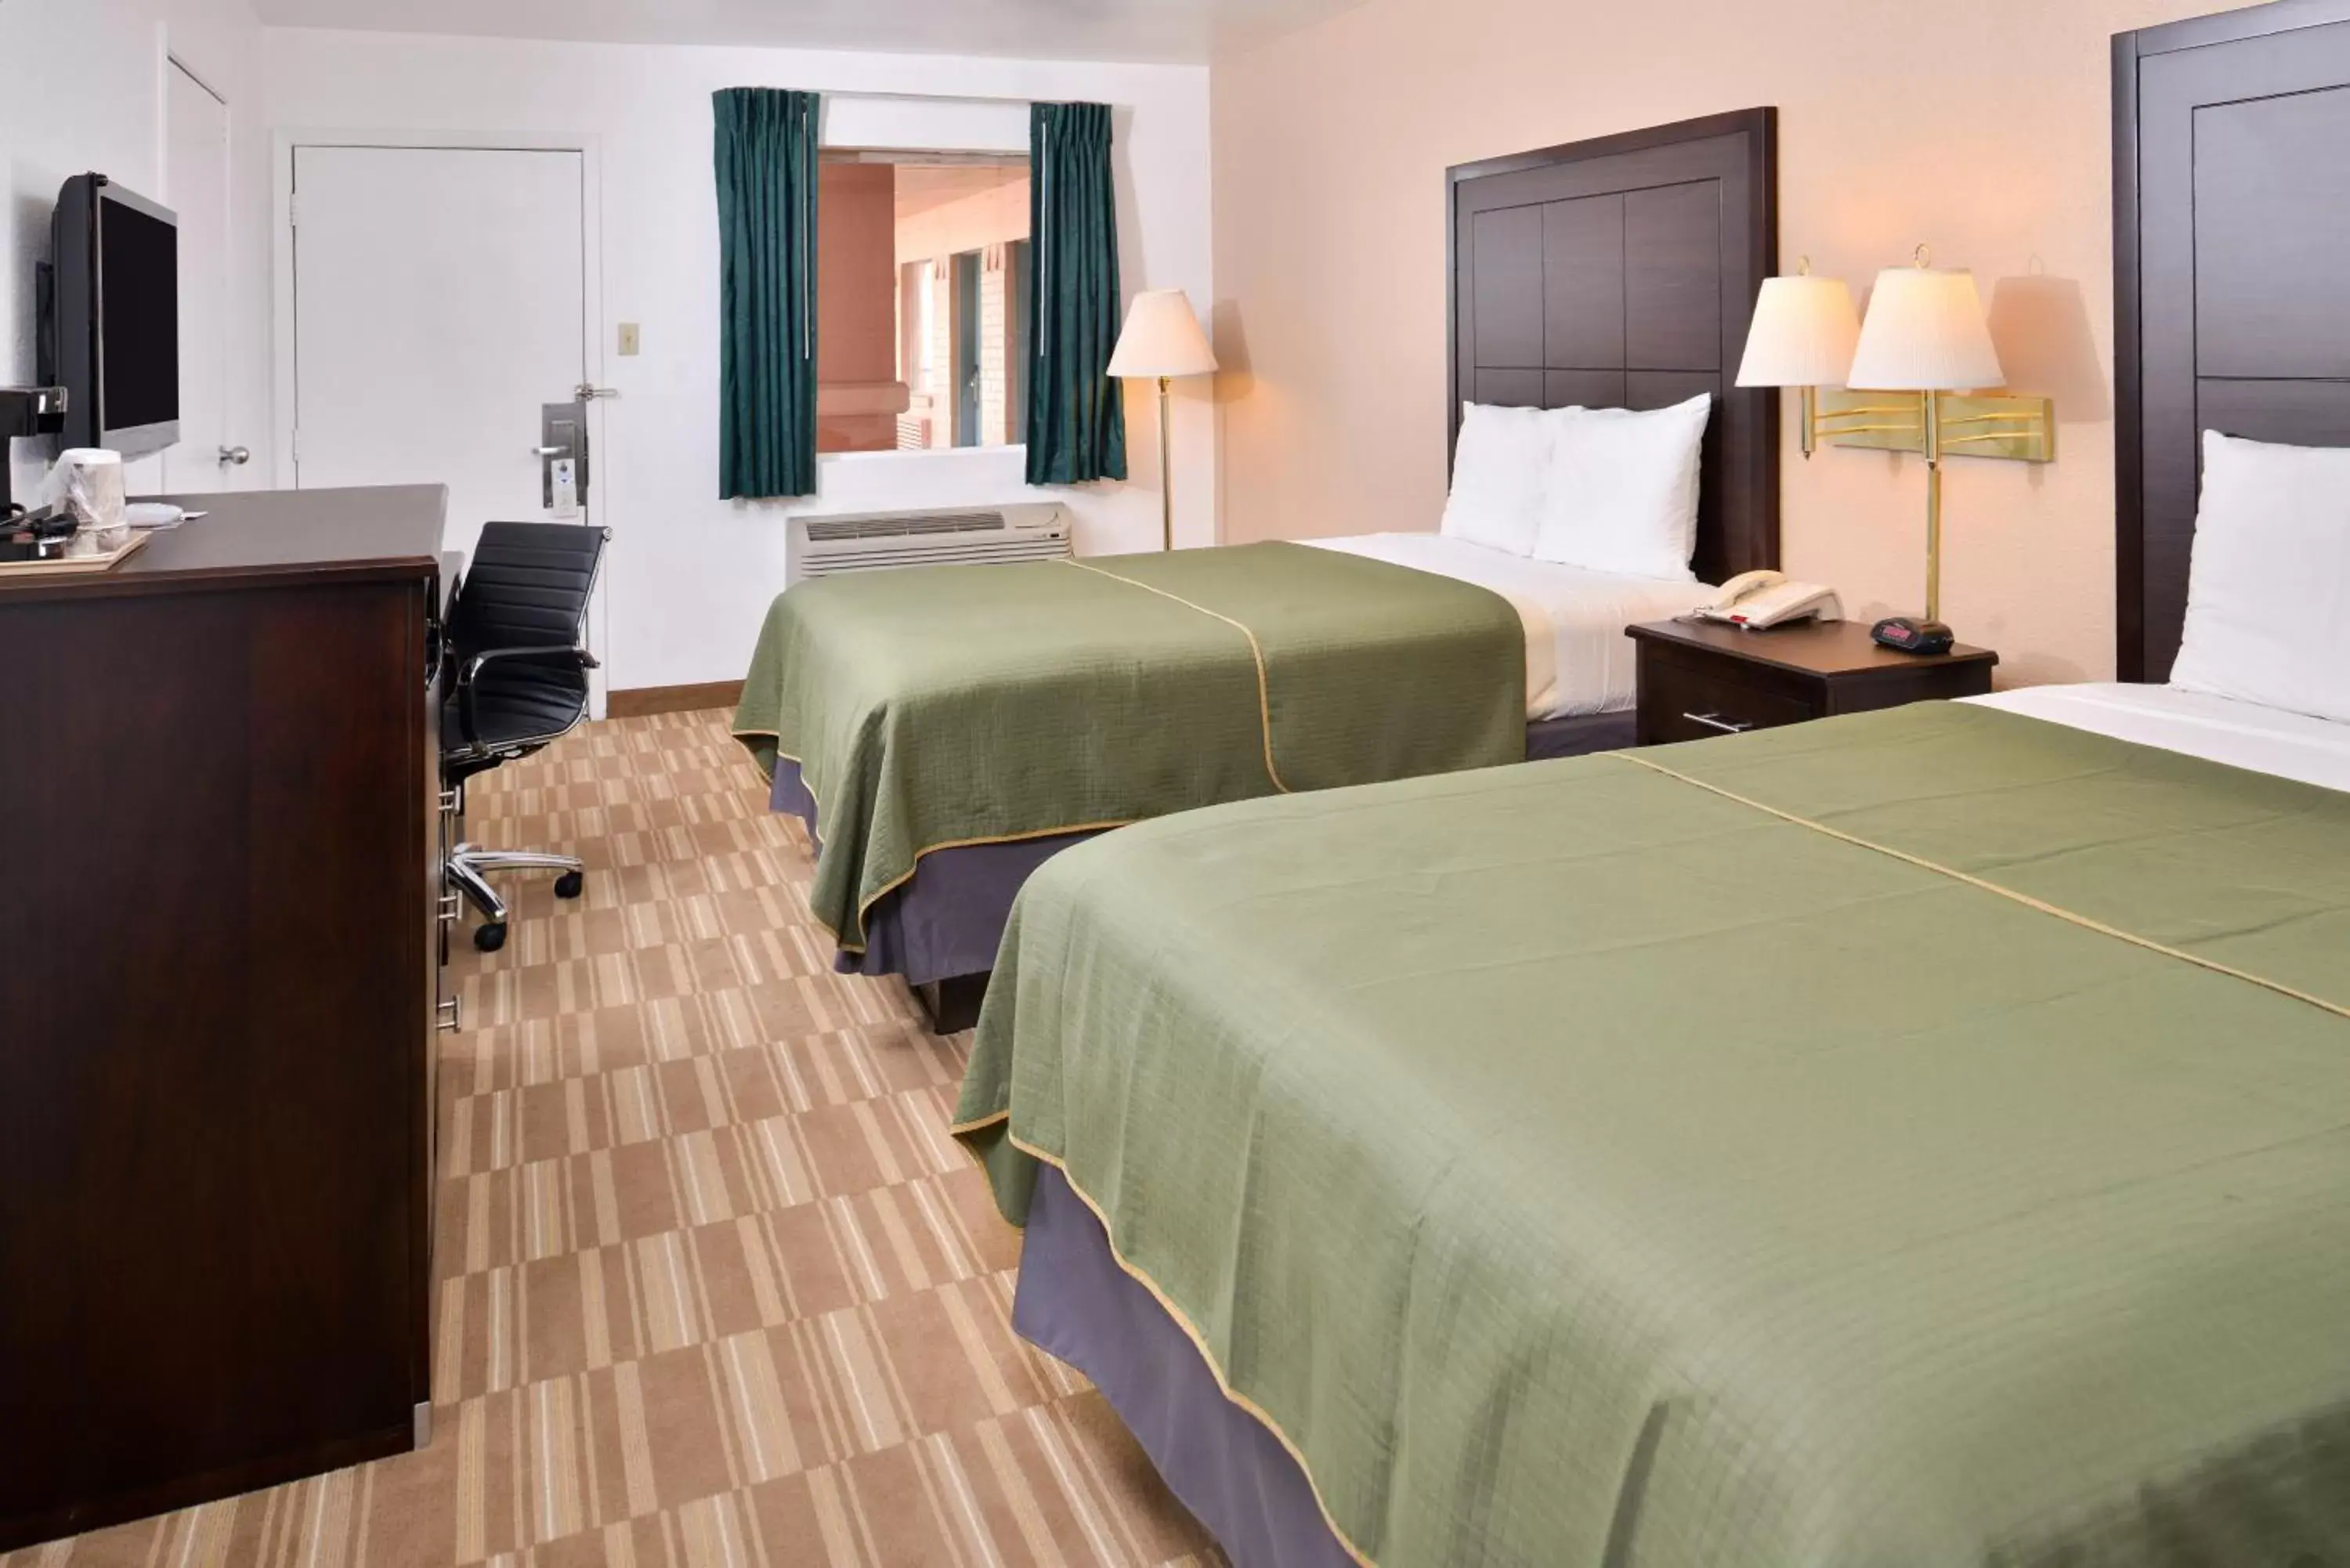 Bedroom, Bed in Americas Best Value Inn Clute